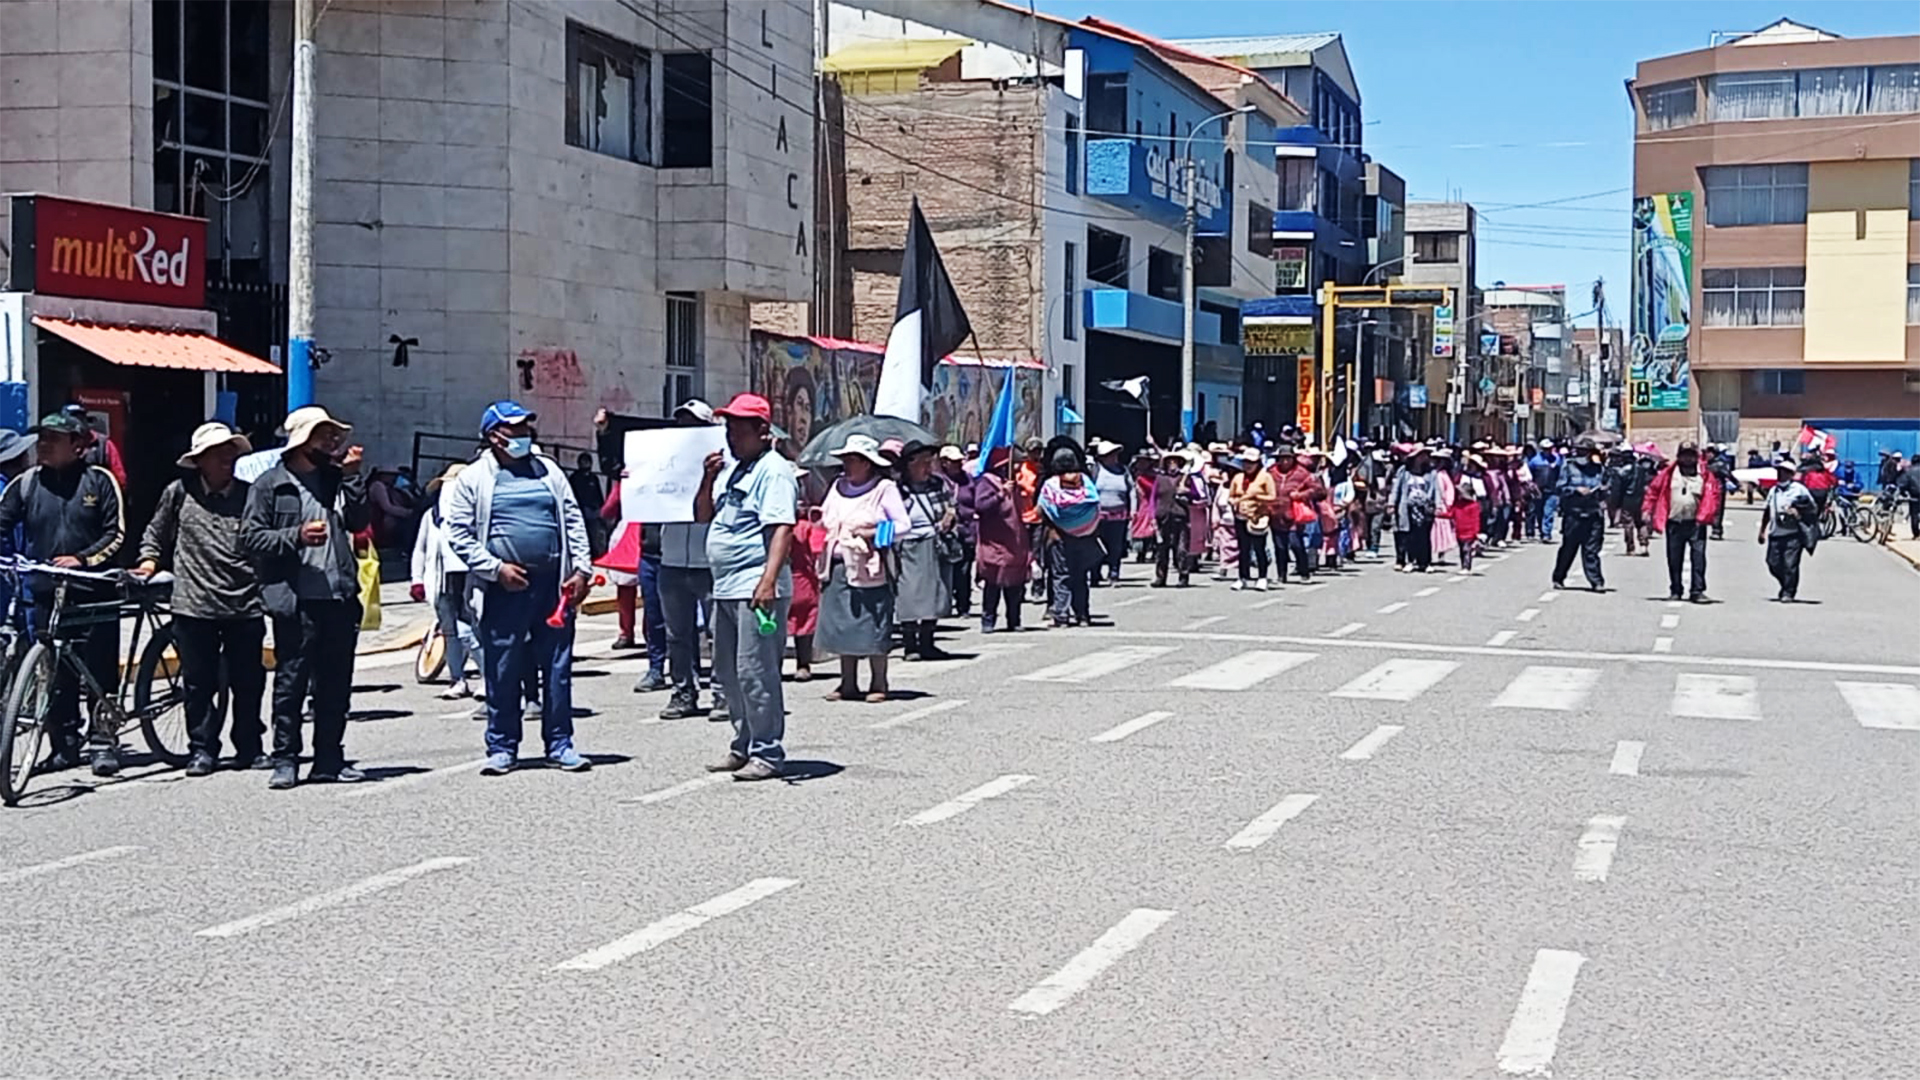 Reiteran pedido de garantizar protestas en Juliaca